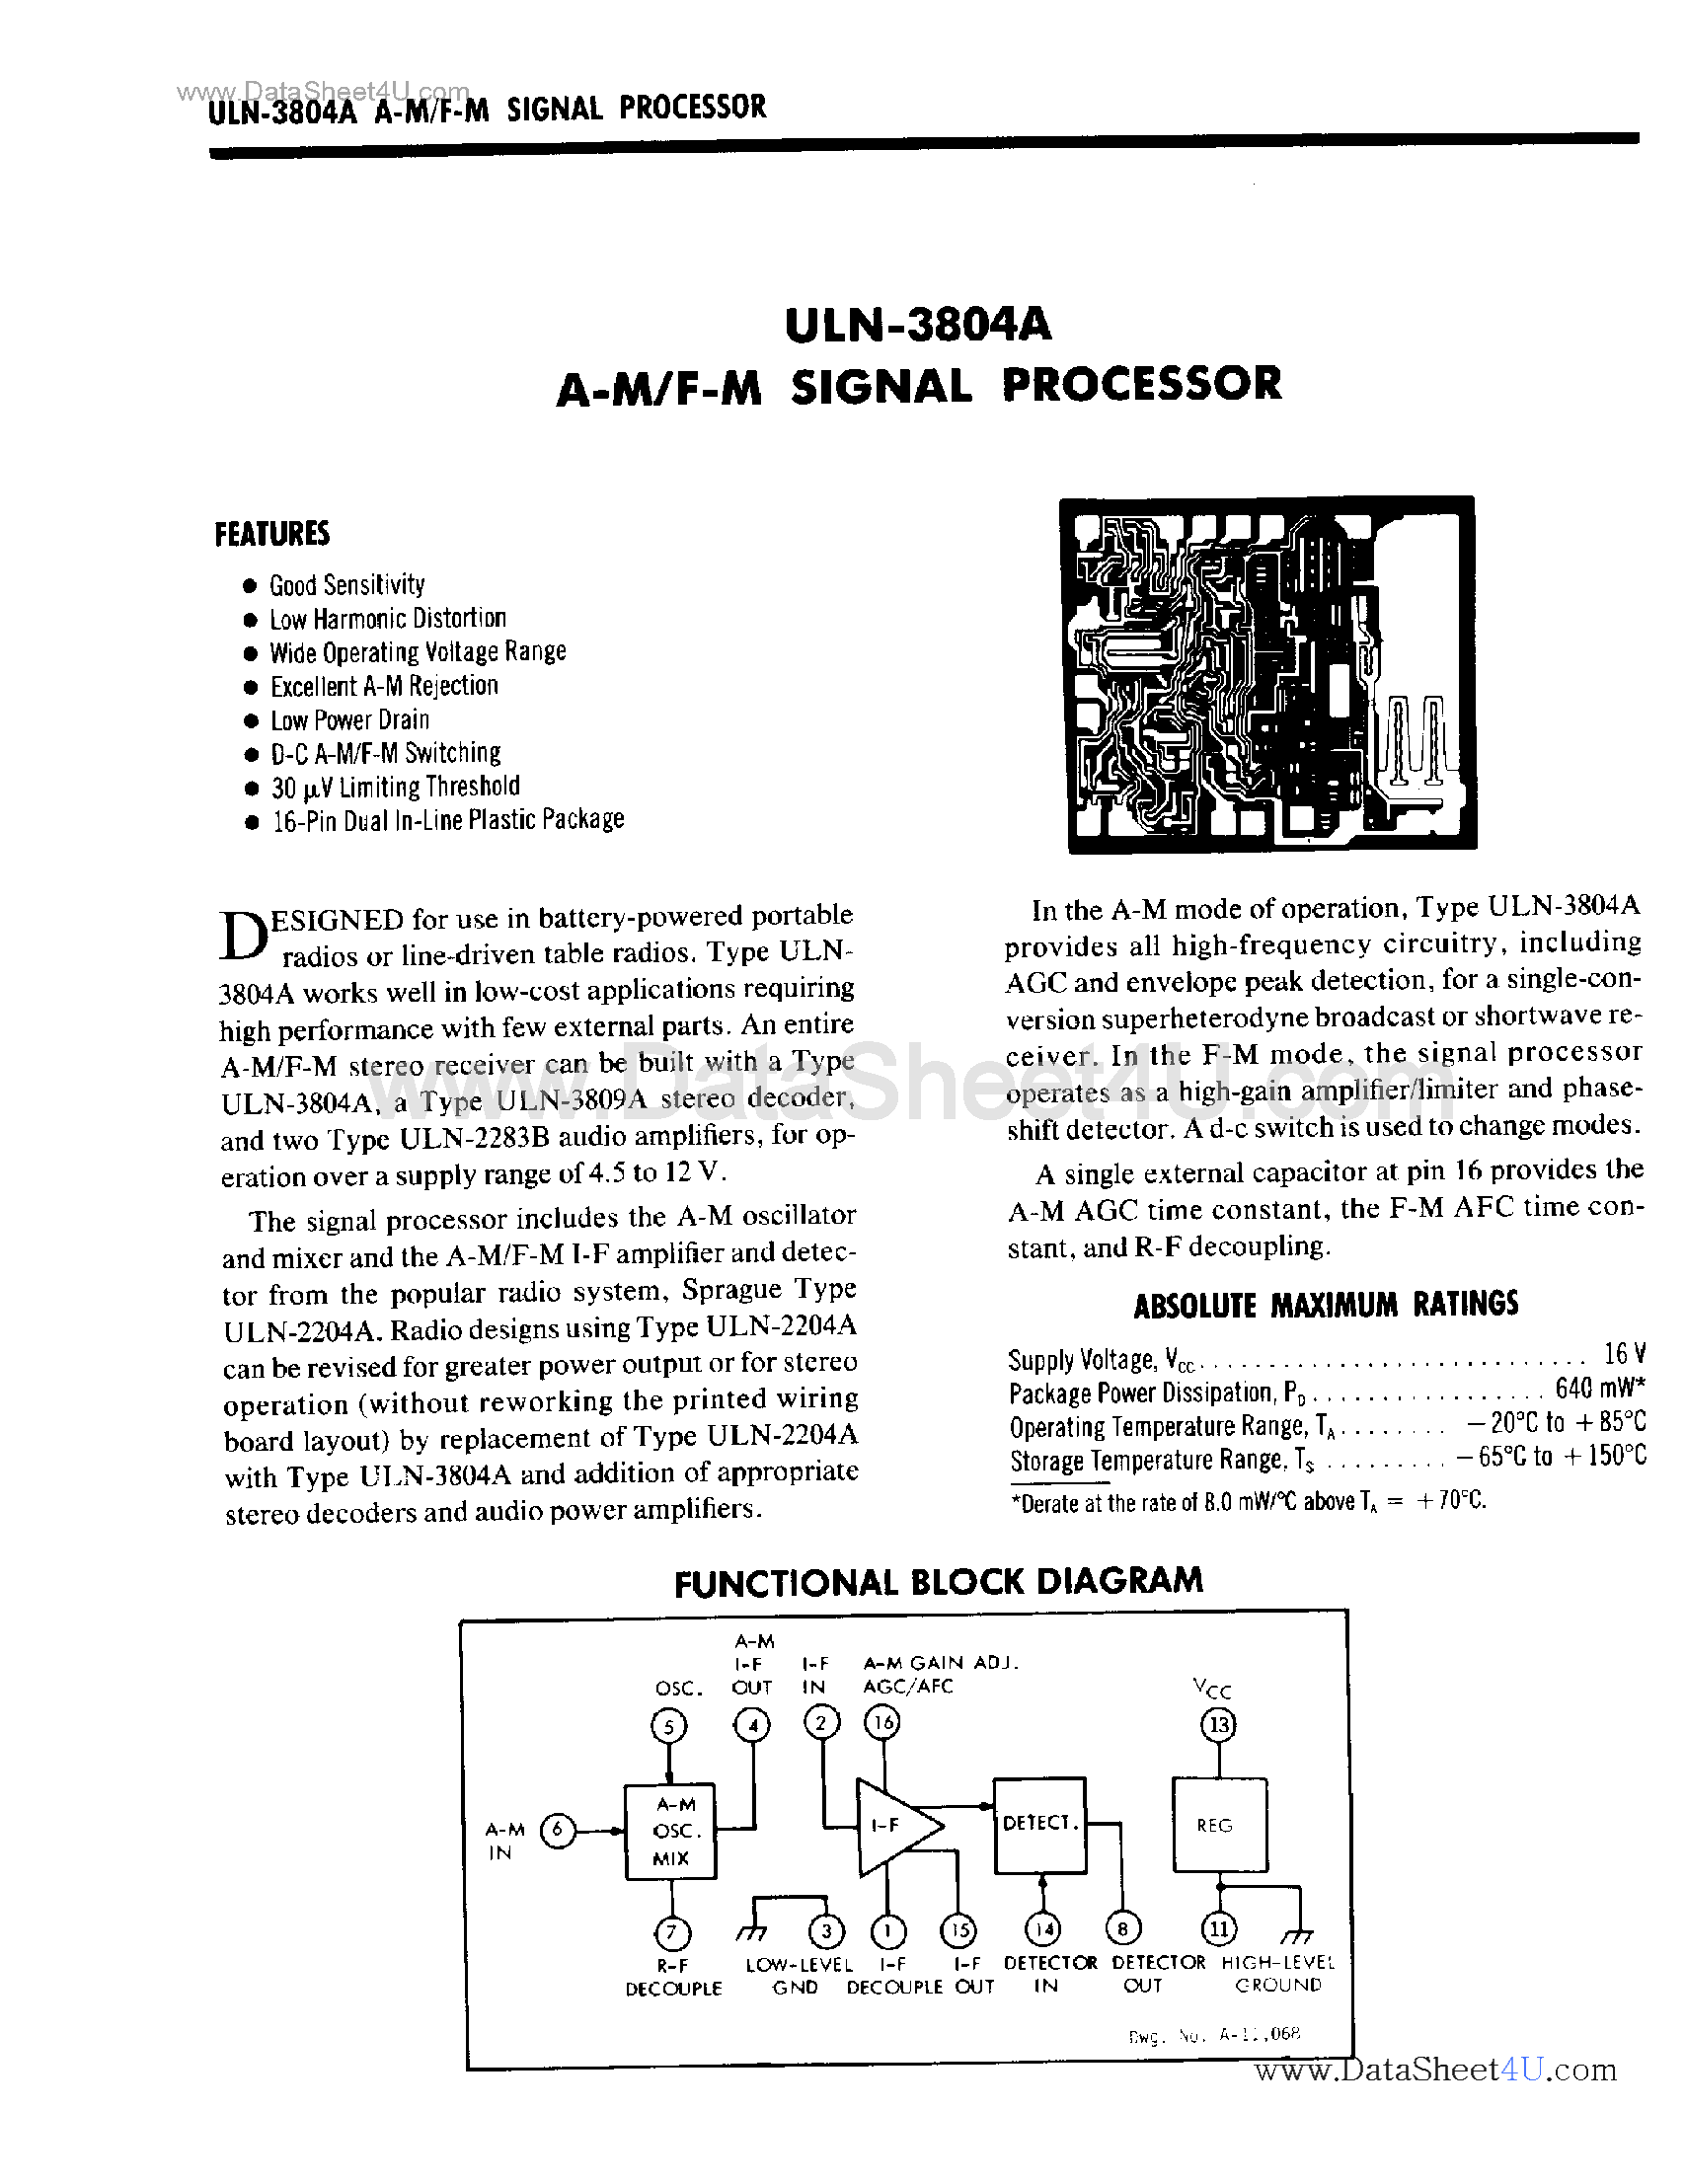 Даташит ULN-3804A - AM / FM Signal Processor страница 1